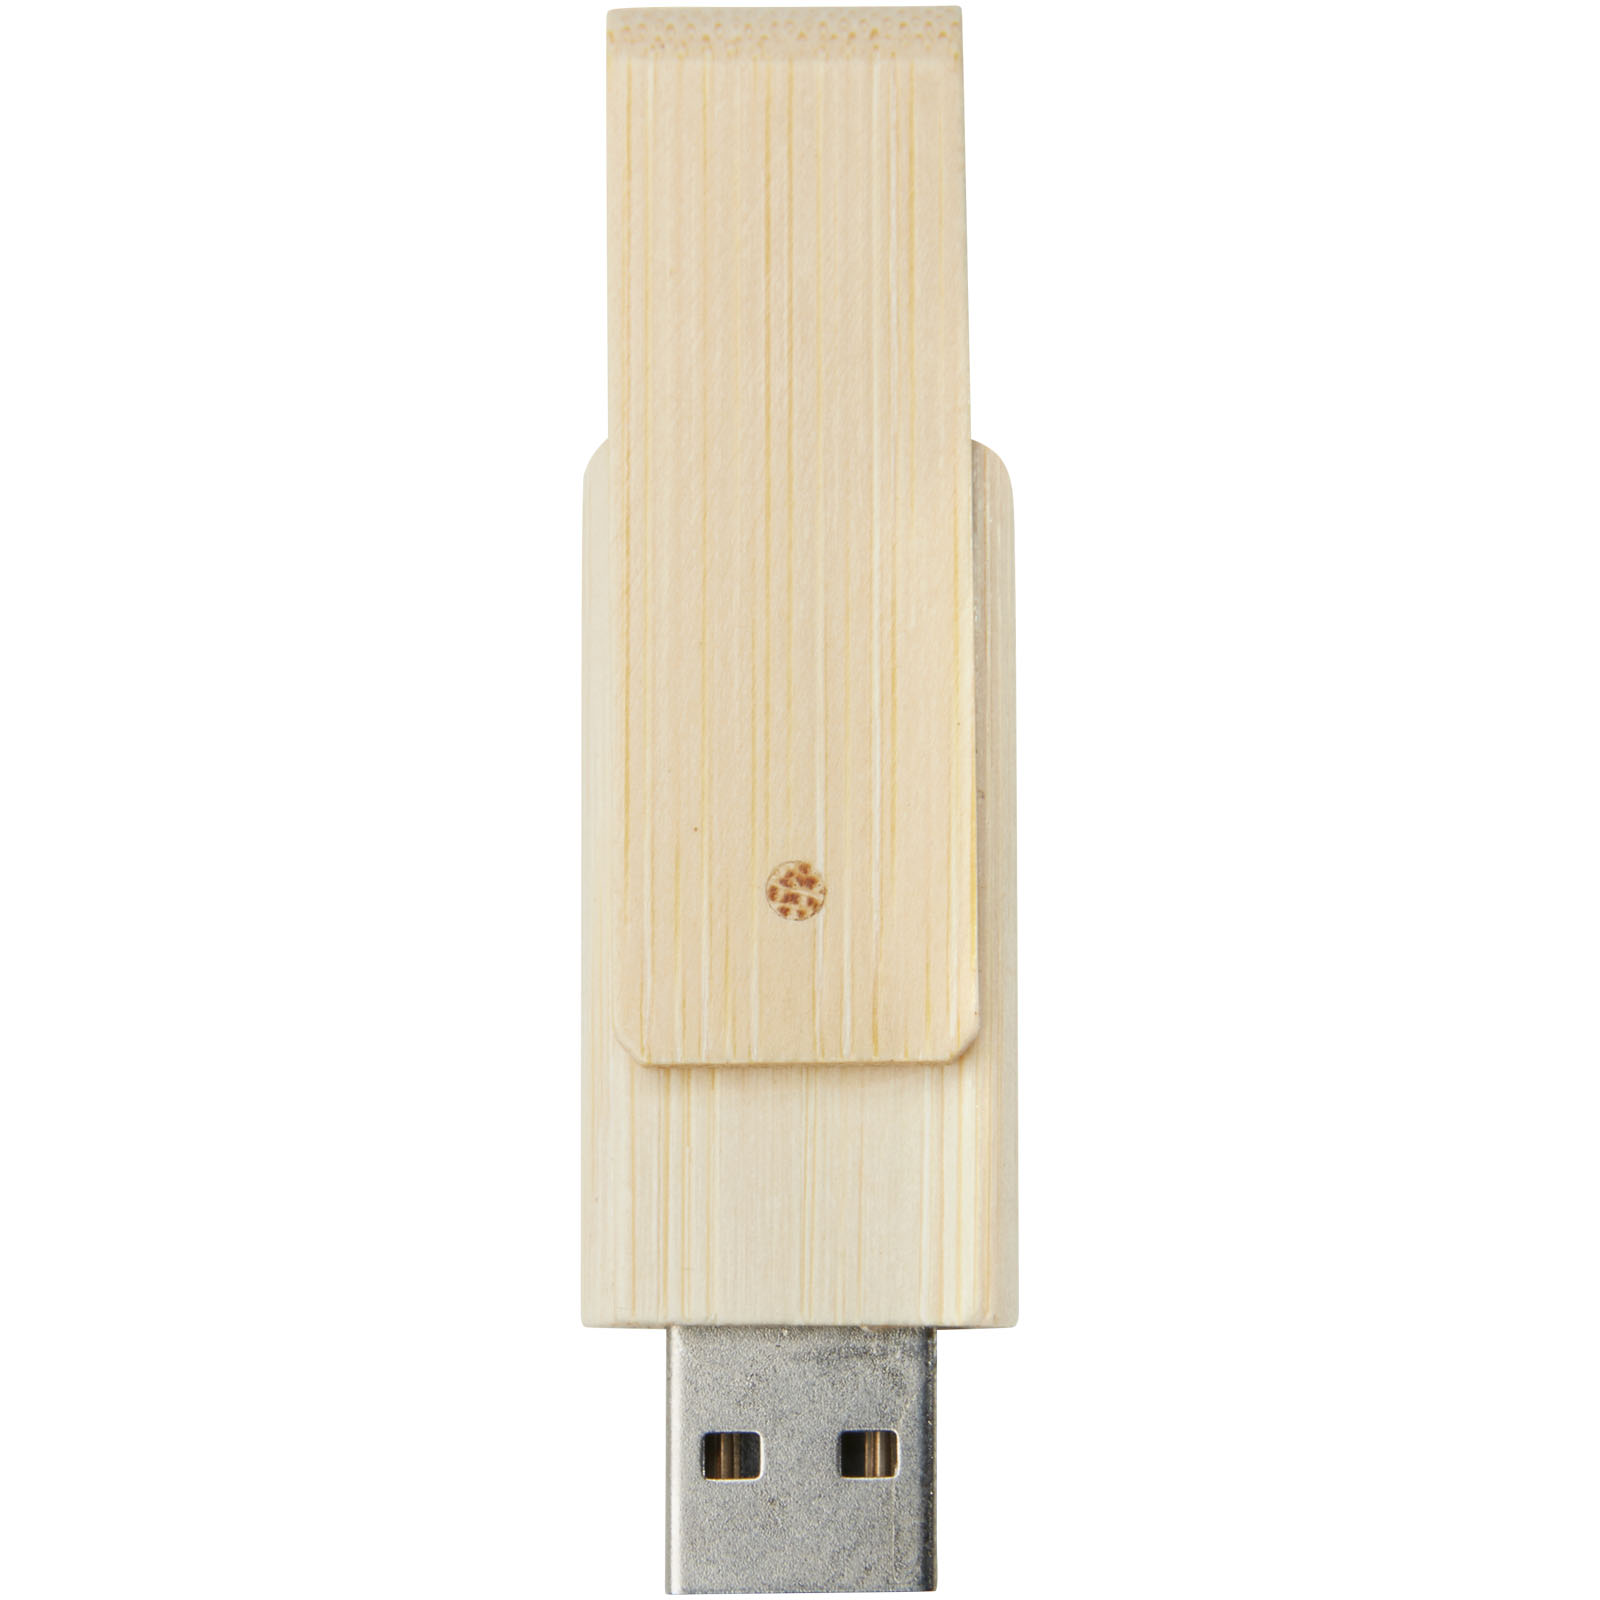 Clés USB publicitaires - Clé USB Rotate 4 Go en bambou - 1